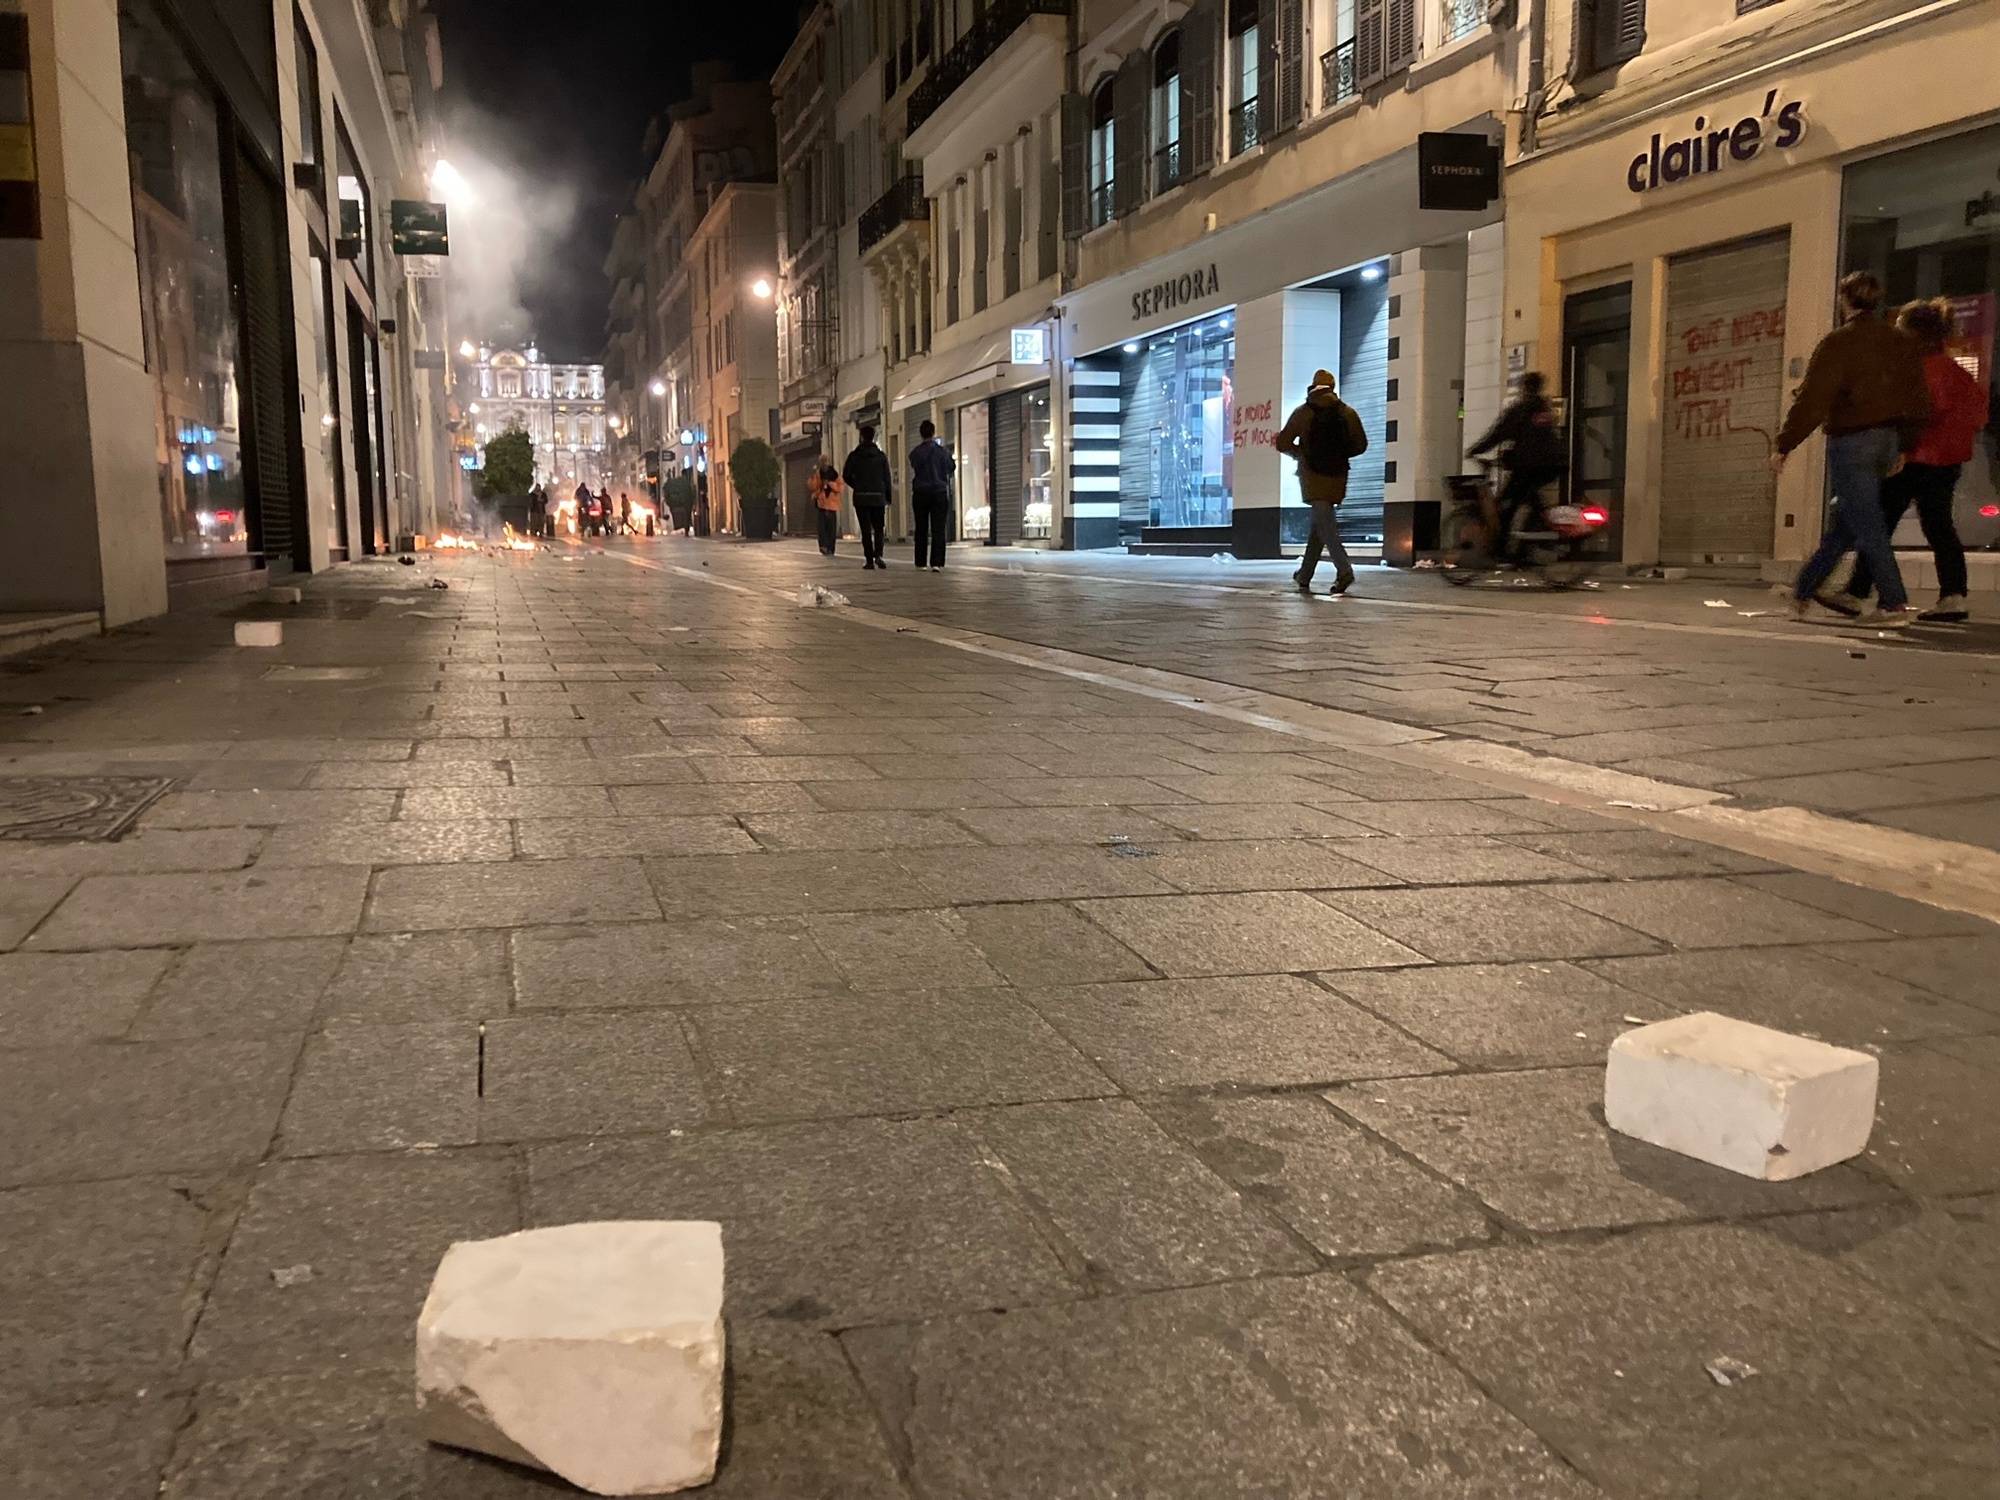 Réforme des retraites : de la casse dans les rues de Marseille, 310 interpellations en France selon Gérald Darmanin